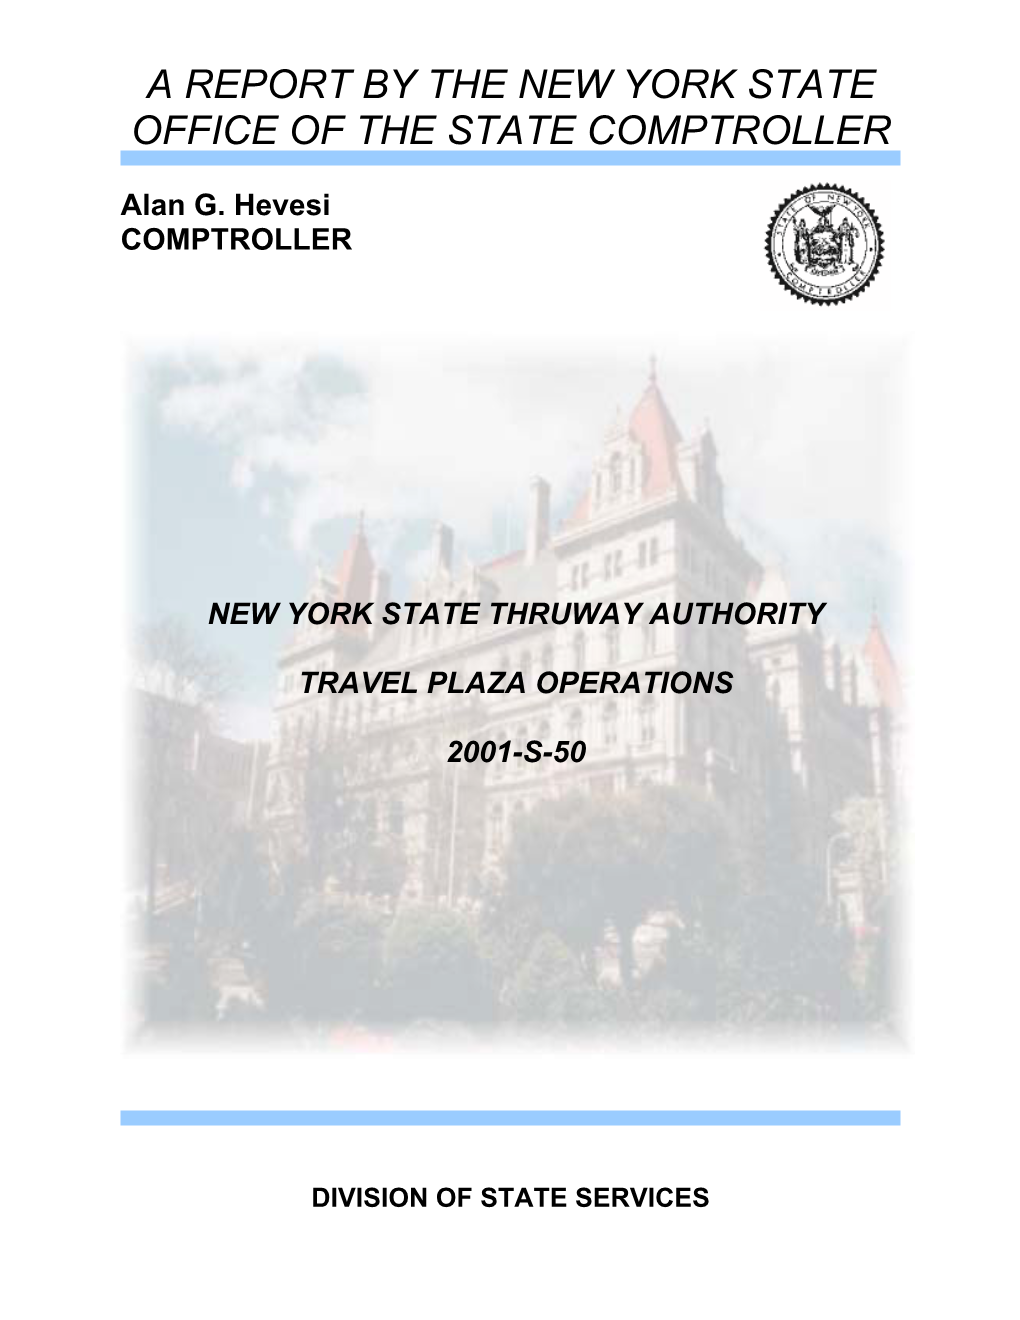 New York State Thruway Authority Travel Plaza Operations 2001-S-50